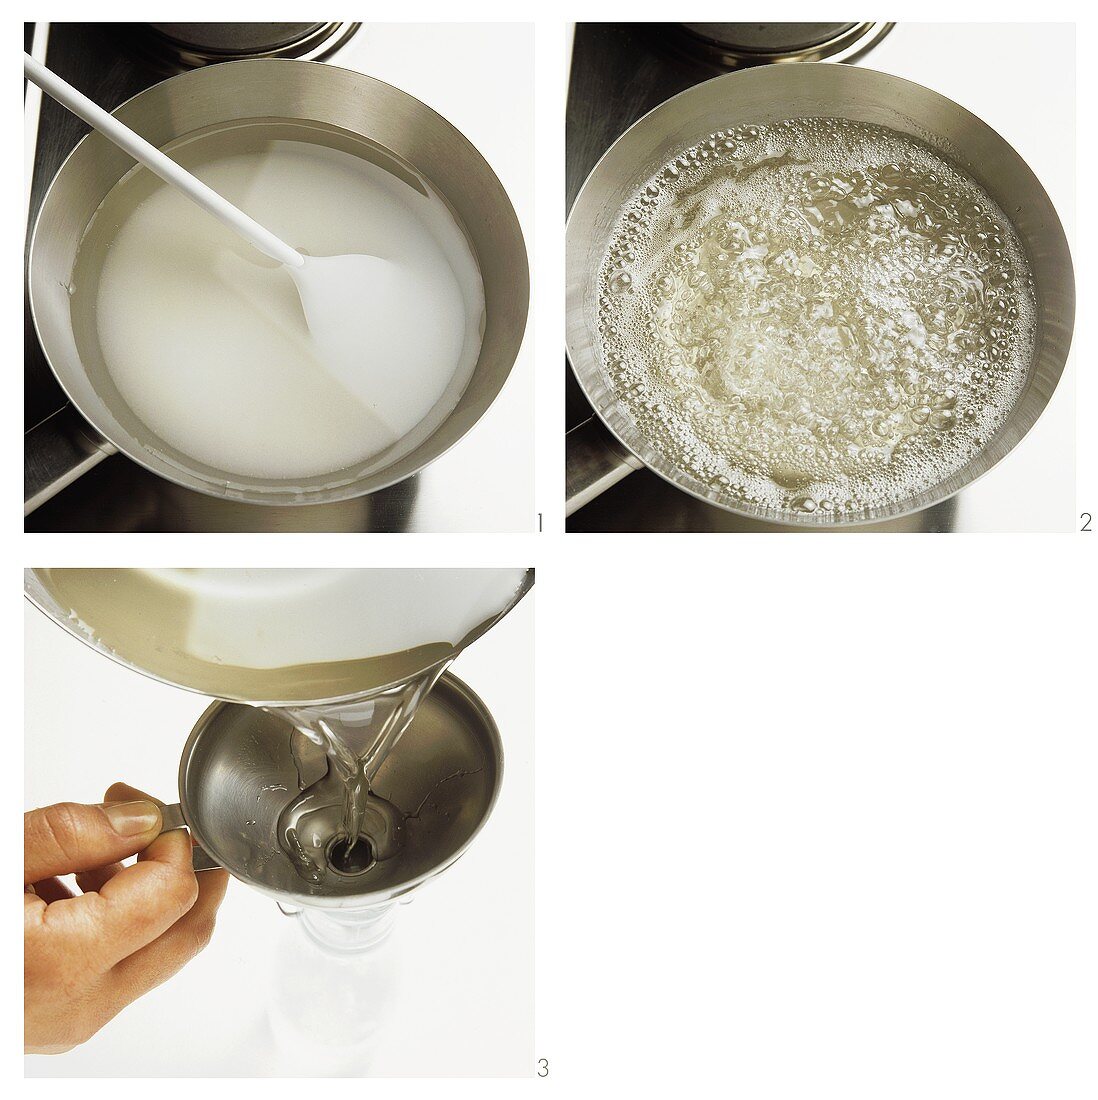 Making sugar syrup